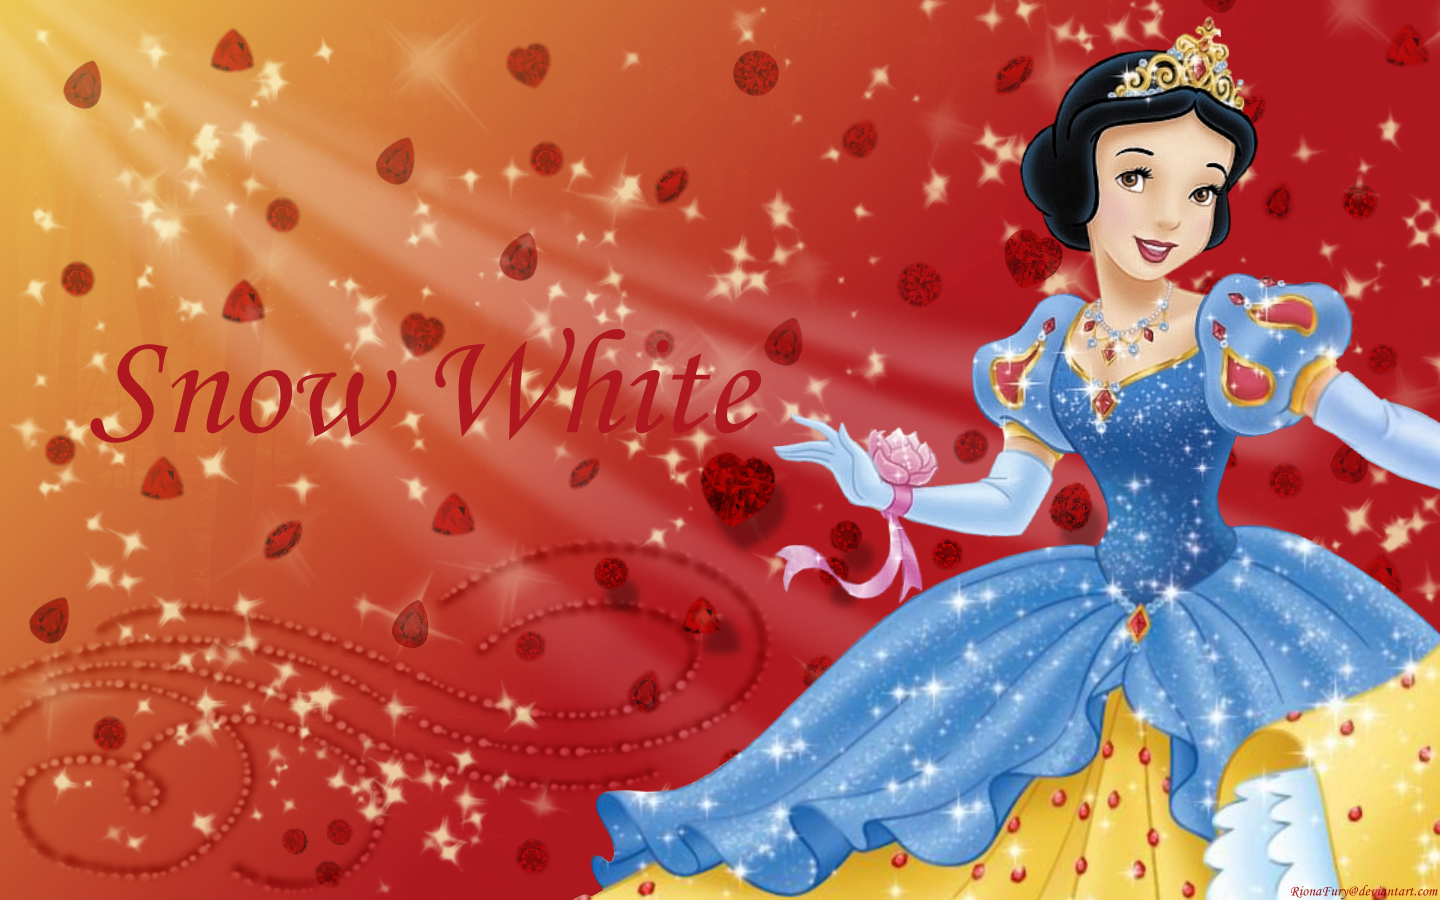 Snow White and the Seven Dwarfs Wallpaper: Snow White. Disney princess snow white, Snow white image, Snow white